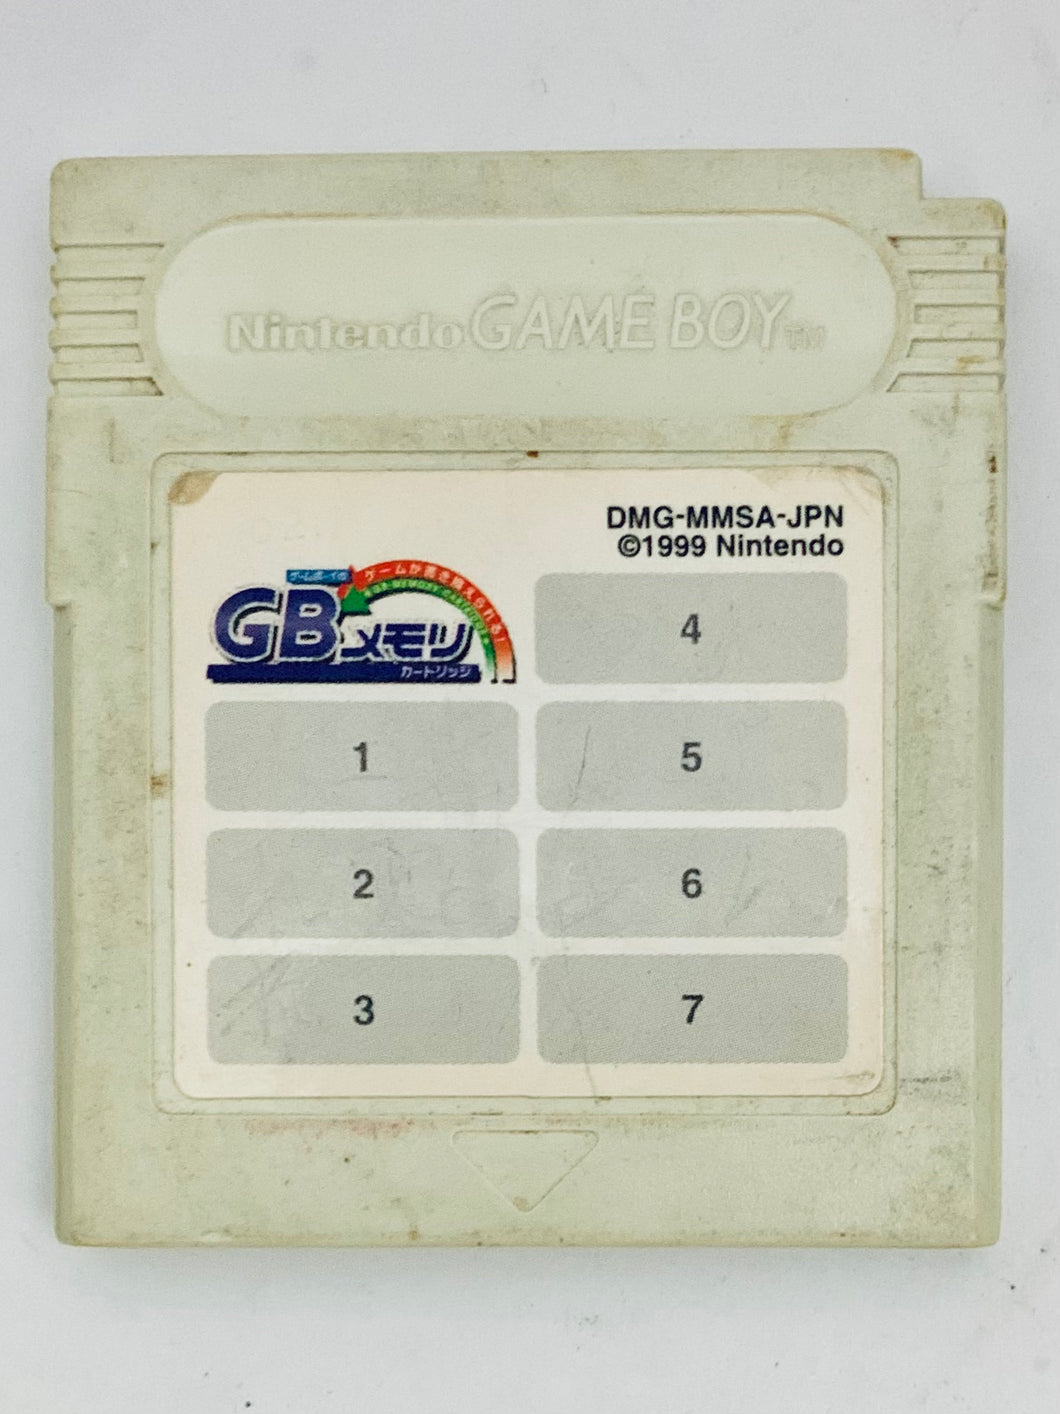 GB Memory Cartridge - GameBoy - Game Boy - Pocket - GBC - GBA - JP - Cartridge (DMG-MMSA-JPN)